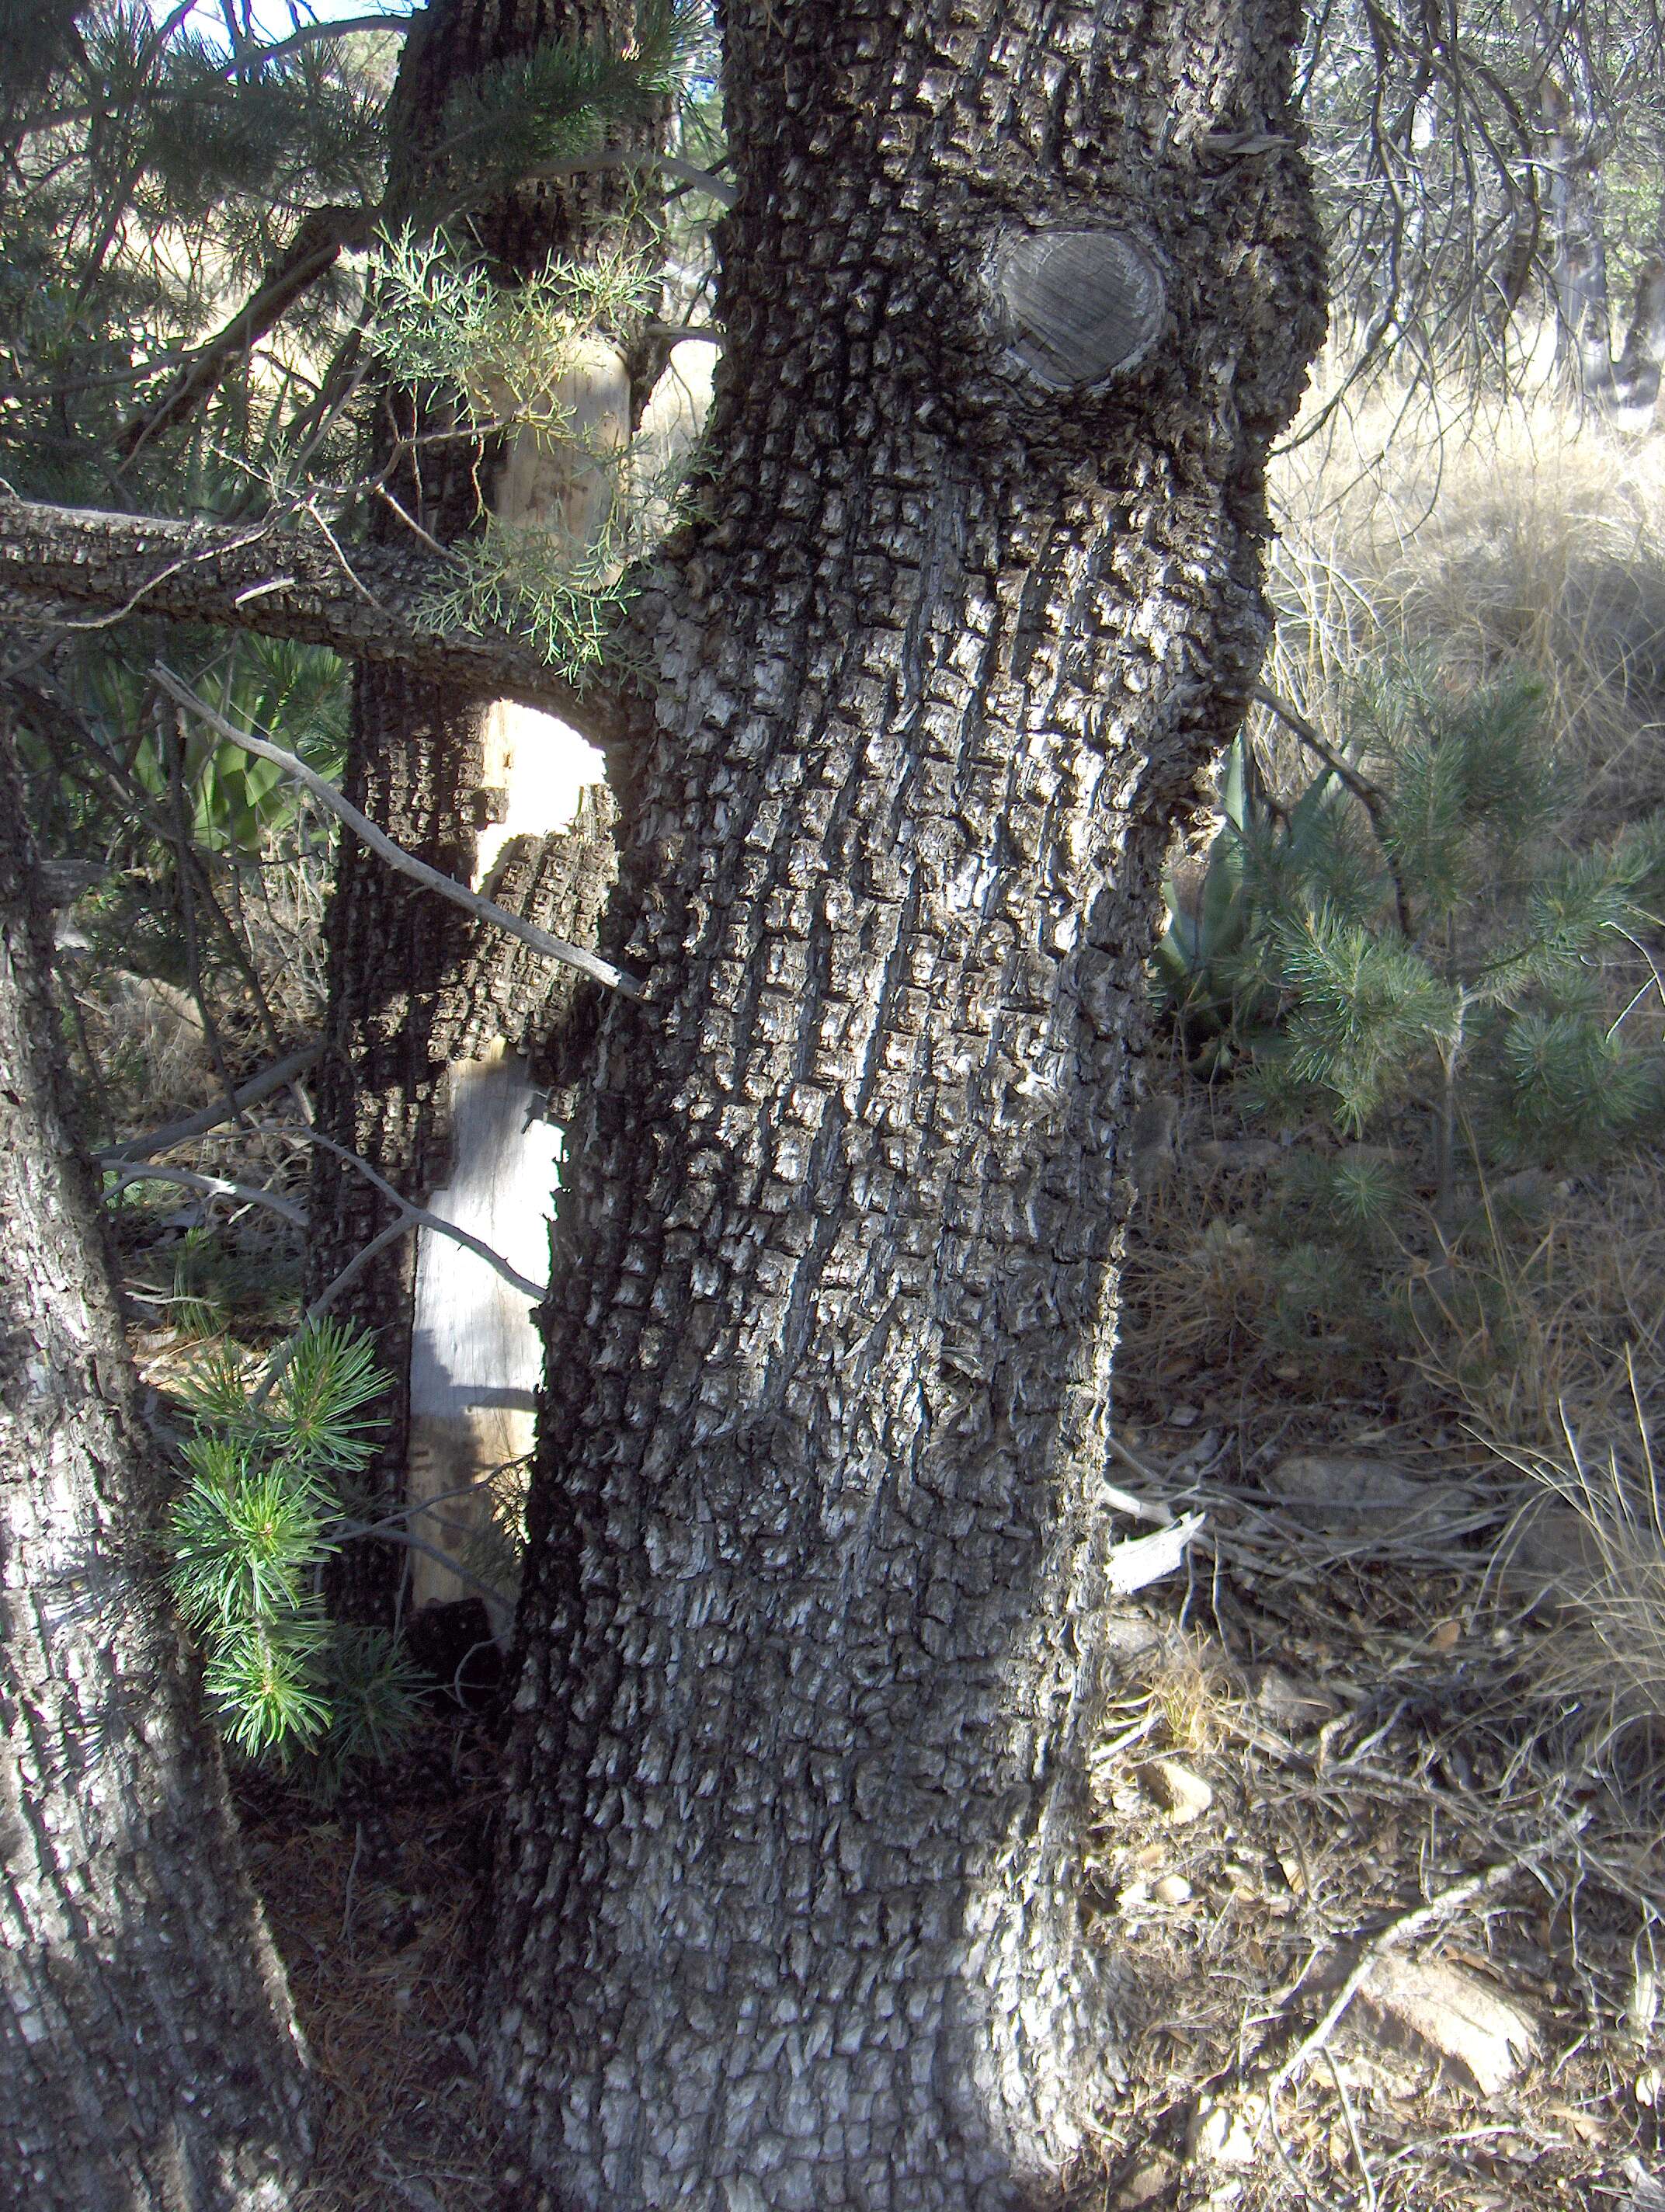 Image of juniper